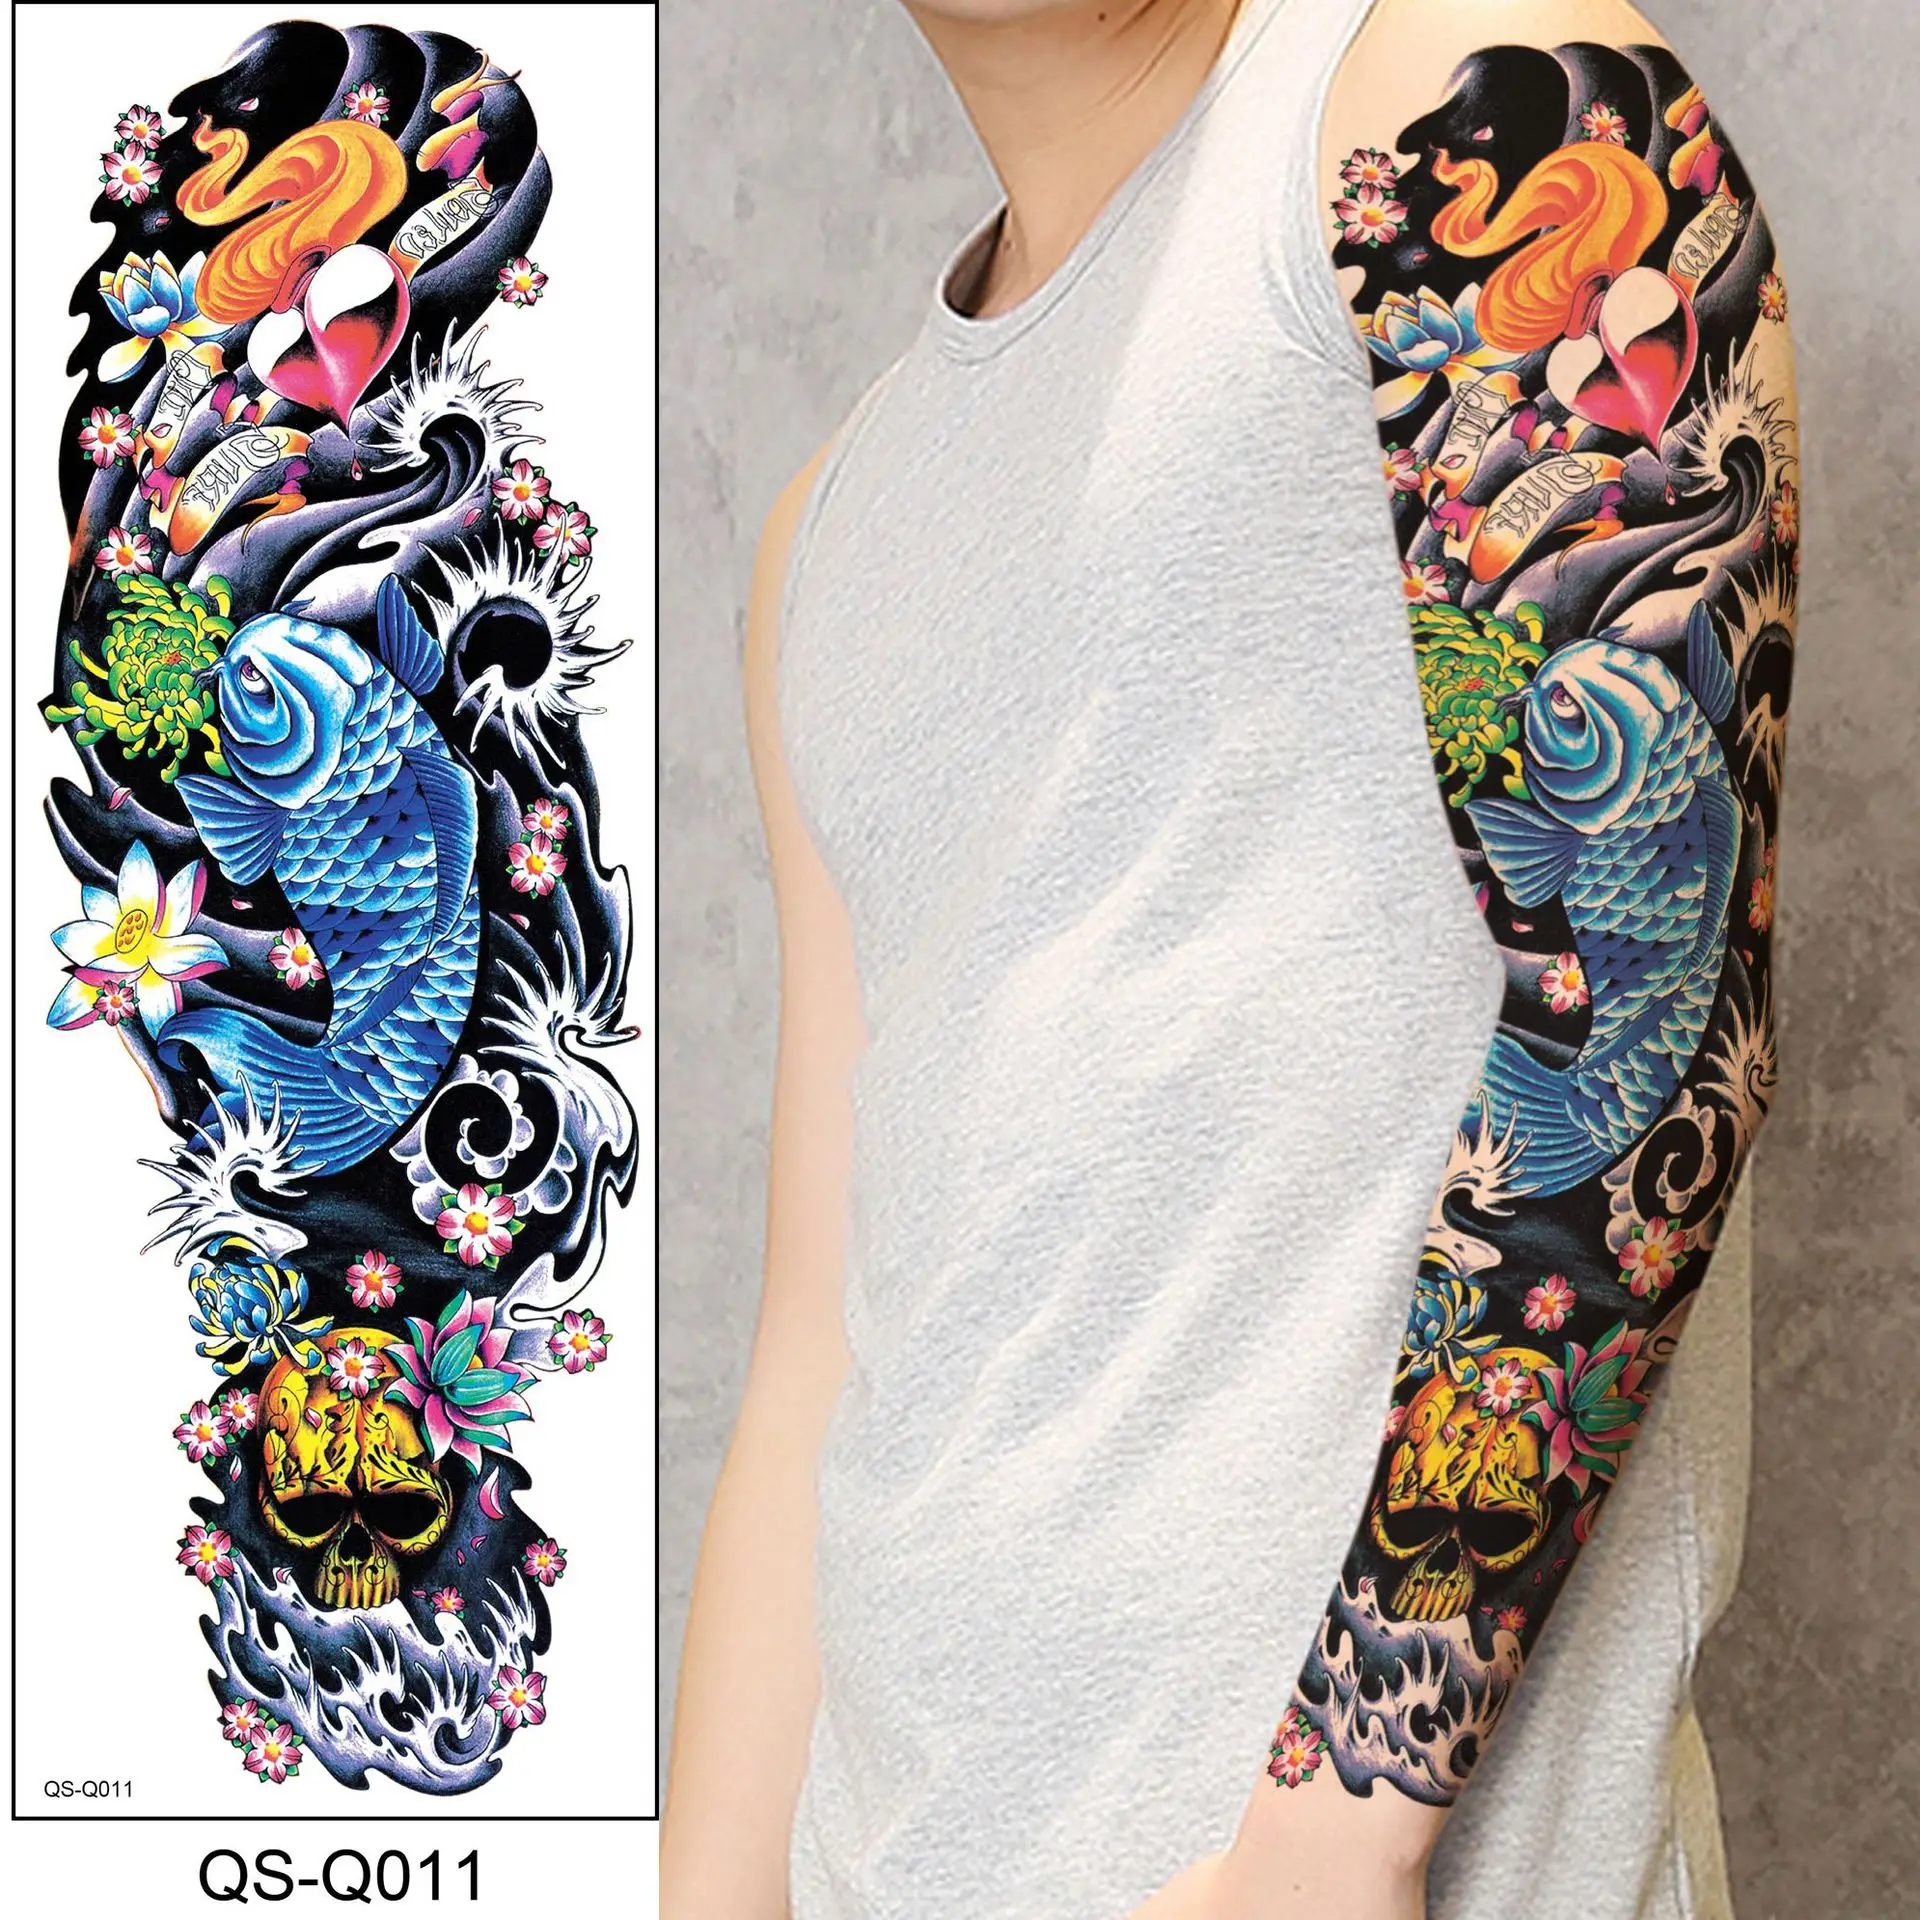 vriua 48cmx17cm arm sleeve tattoo sketch